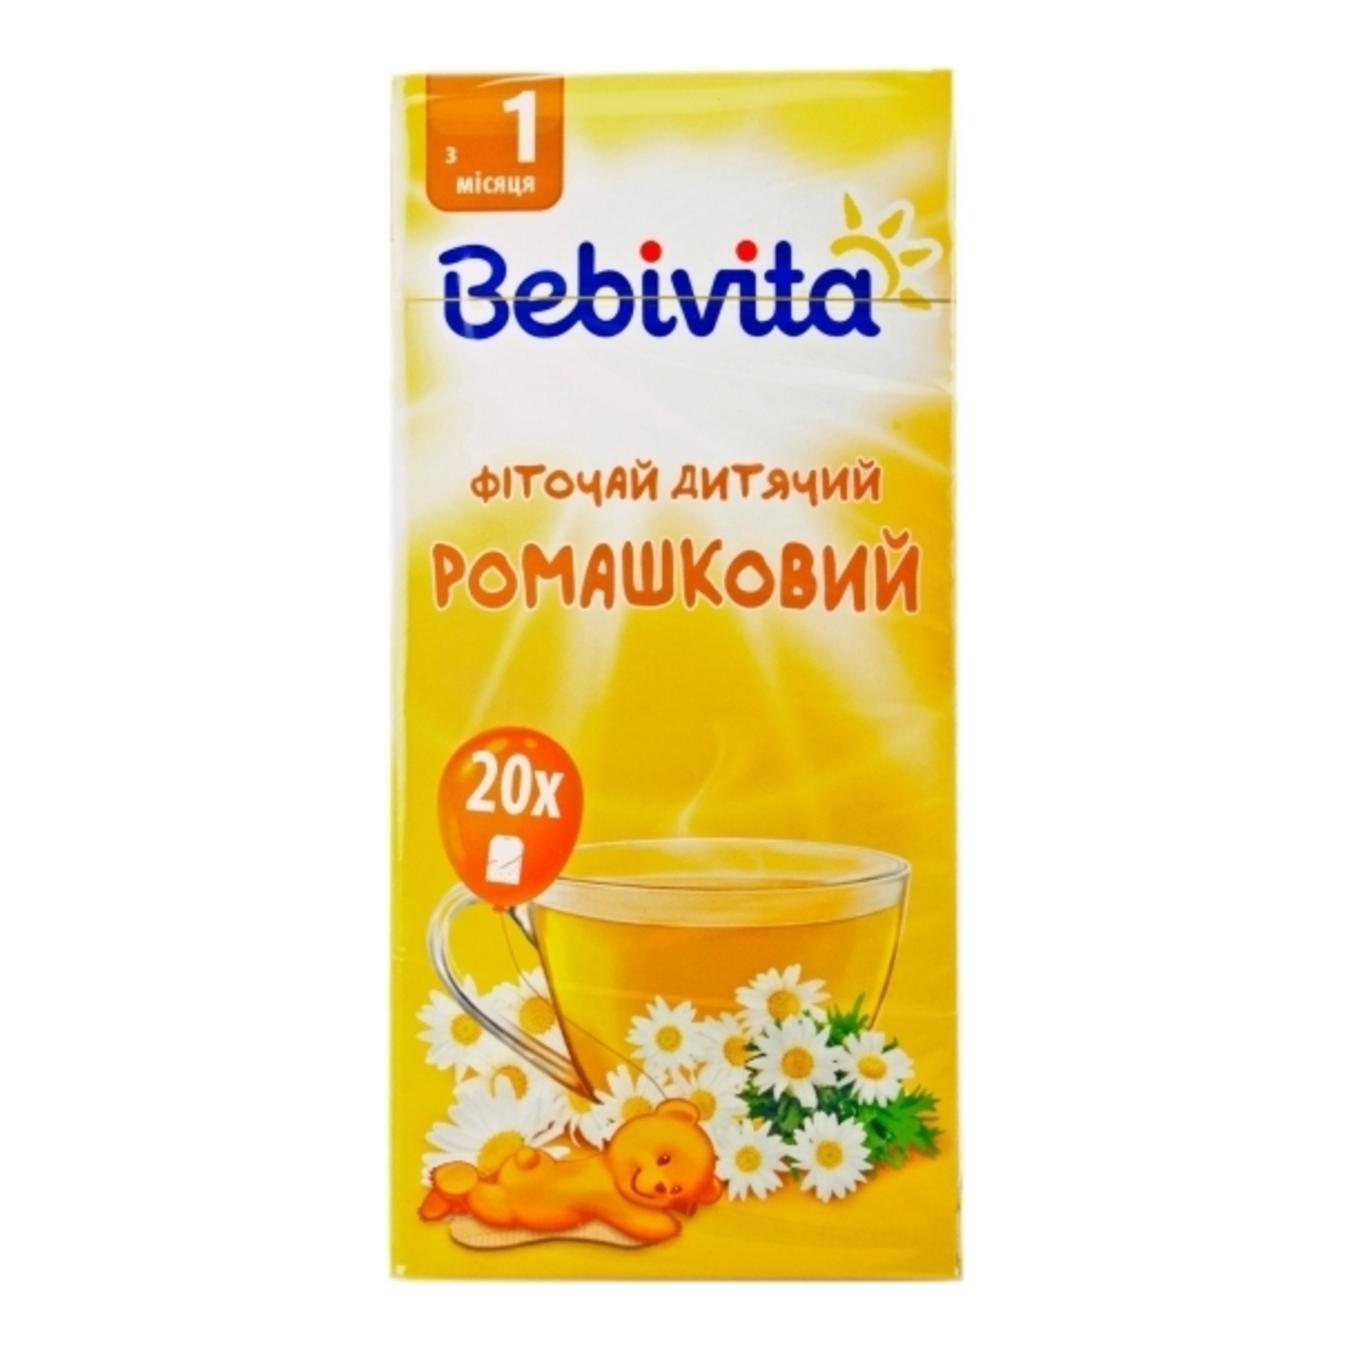 Фиточай Bebivita ромашковый для детей с 1 месяца 30г